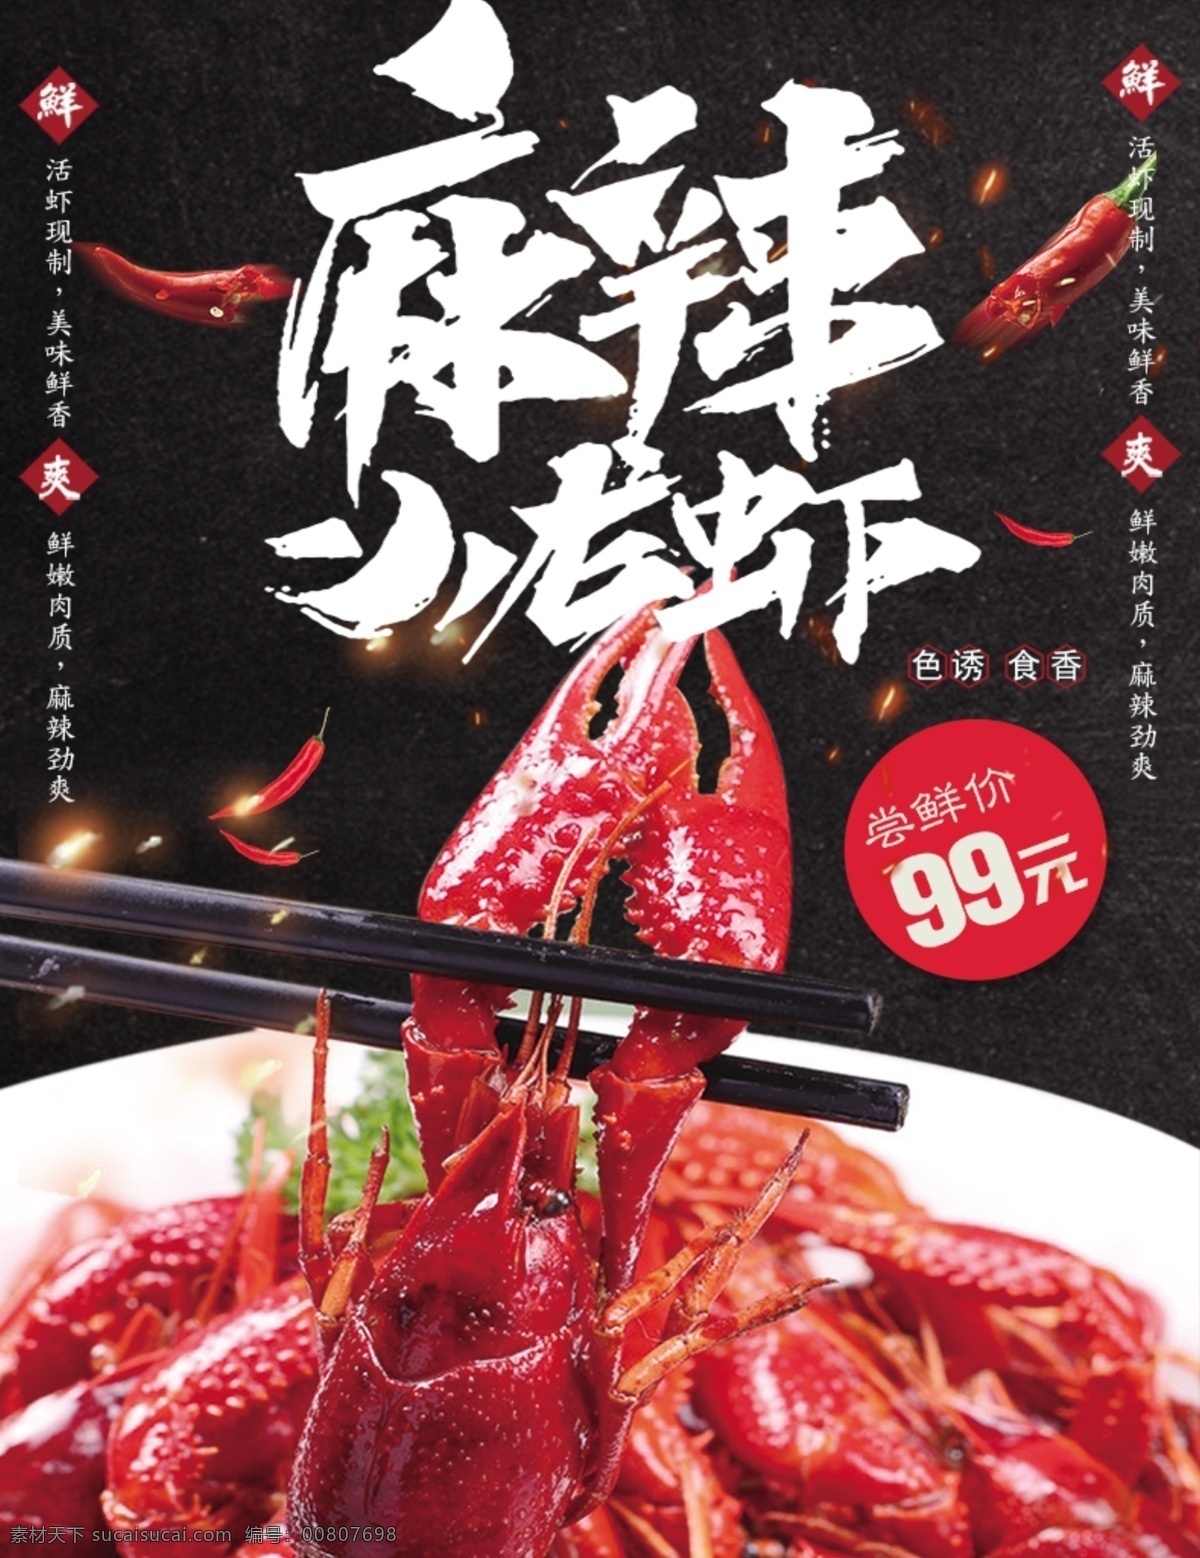 黑色 大气 麻辣 小 龙虾 促销 海报 小龙虾 美食 特色 夜市